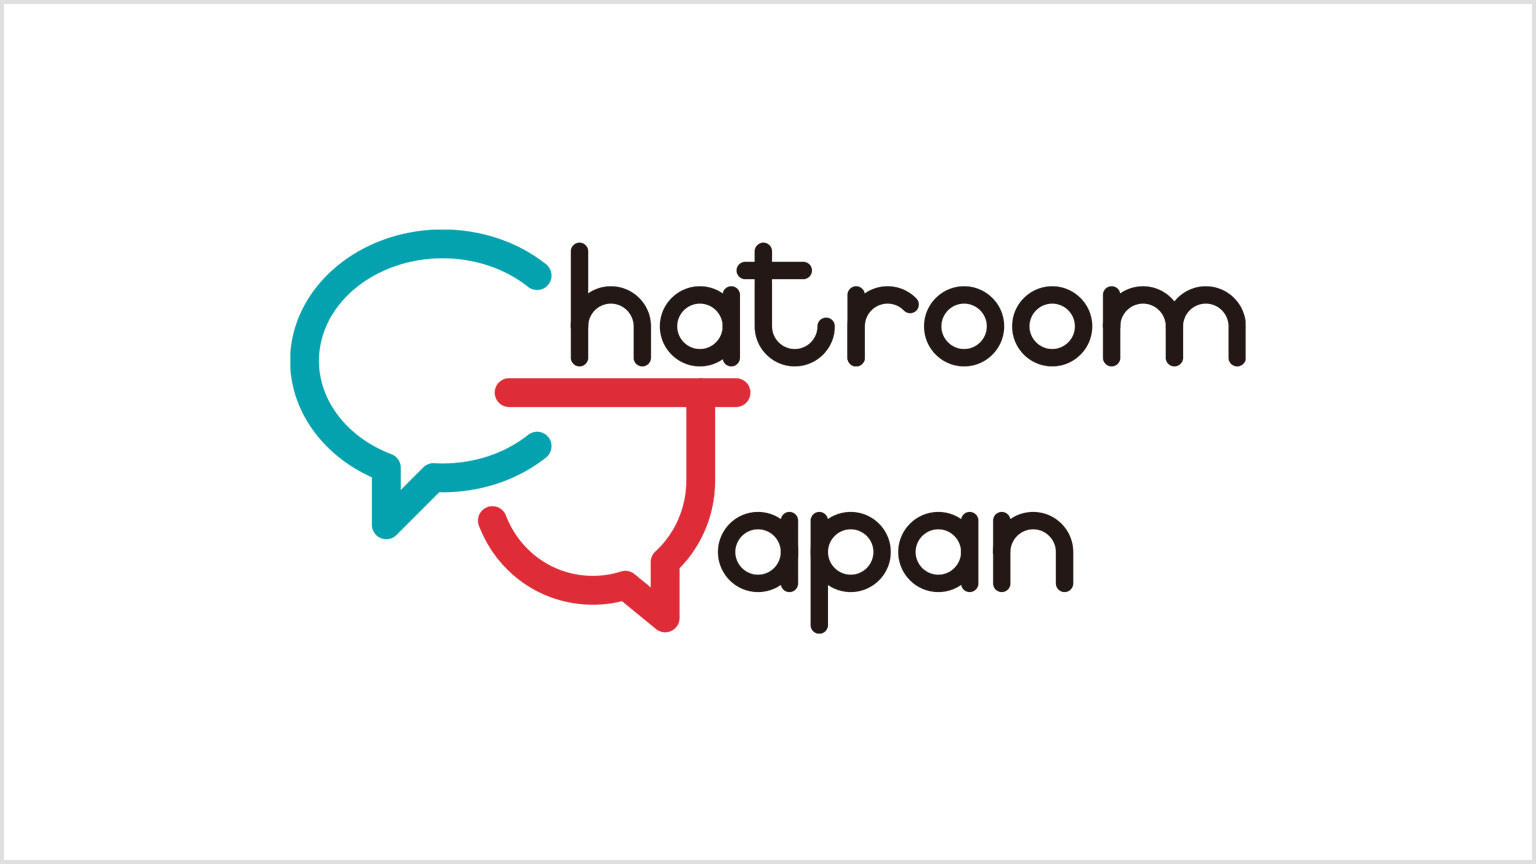 चैटरूम जापान
Chatroom Japan